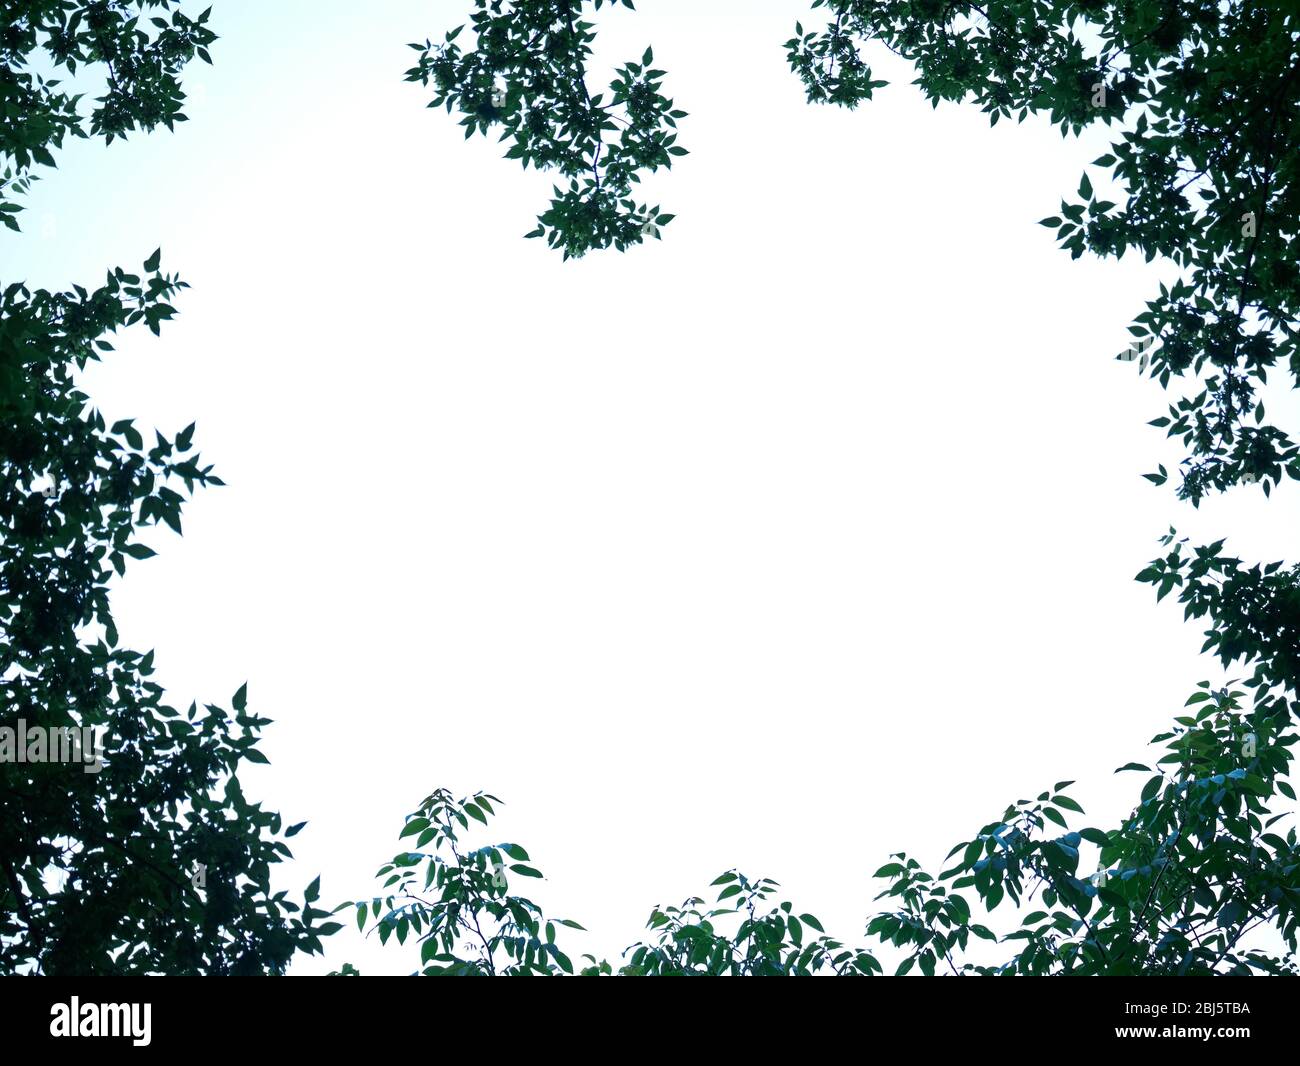 Naturaleza paisaje forestal con ventana a través de árboles, cielo fondo amplio arriba vista de agujero en madera hacia el cielo Foto de stock